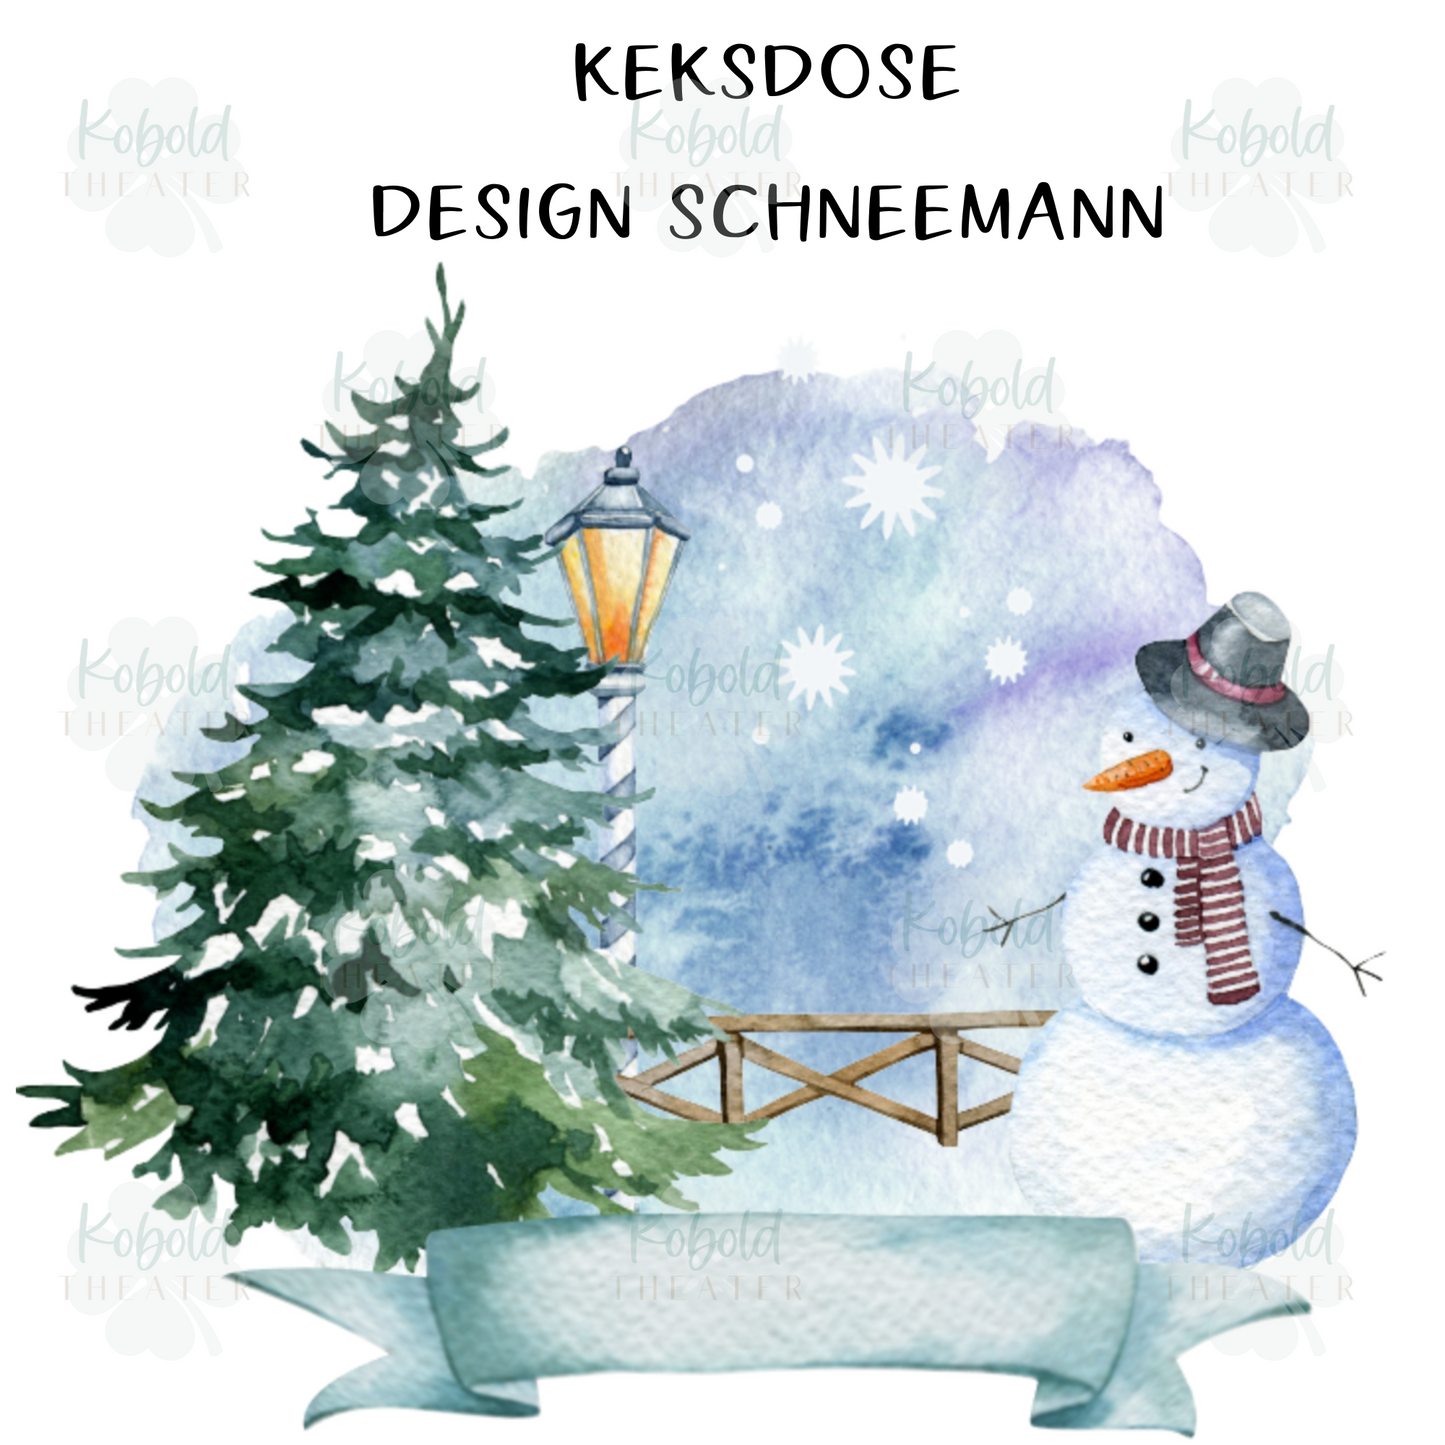 Keksdose personalisiert mit Namen, Geschenk, Mama, Oma, Plätzchendose, Vorratsdose Keramik mit Holzdeckel - Design Schneemann